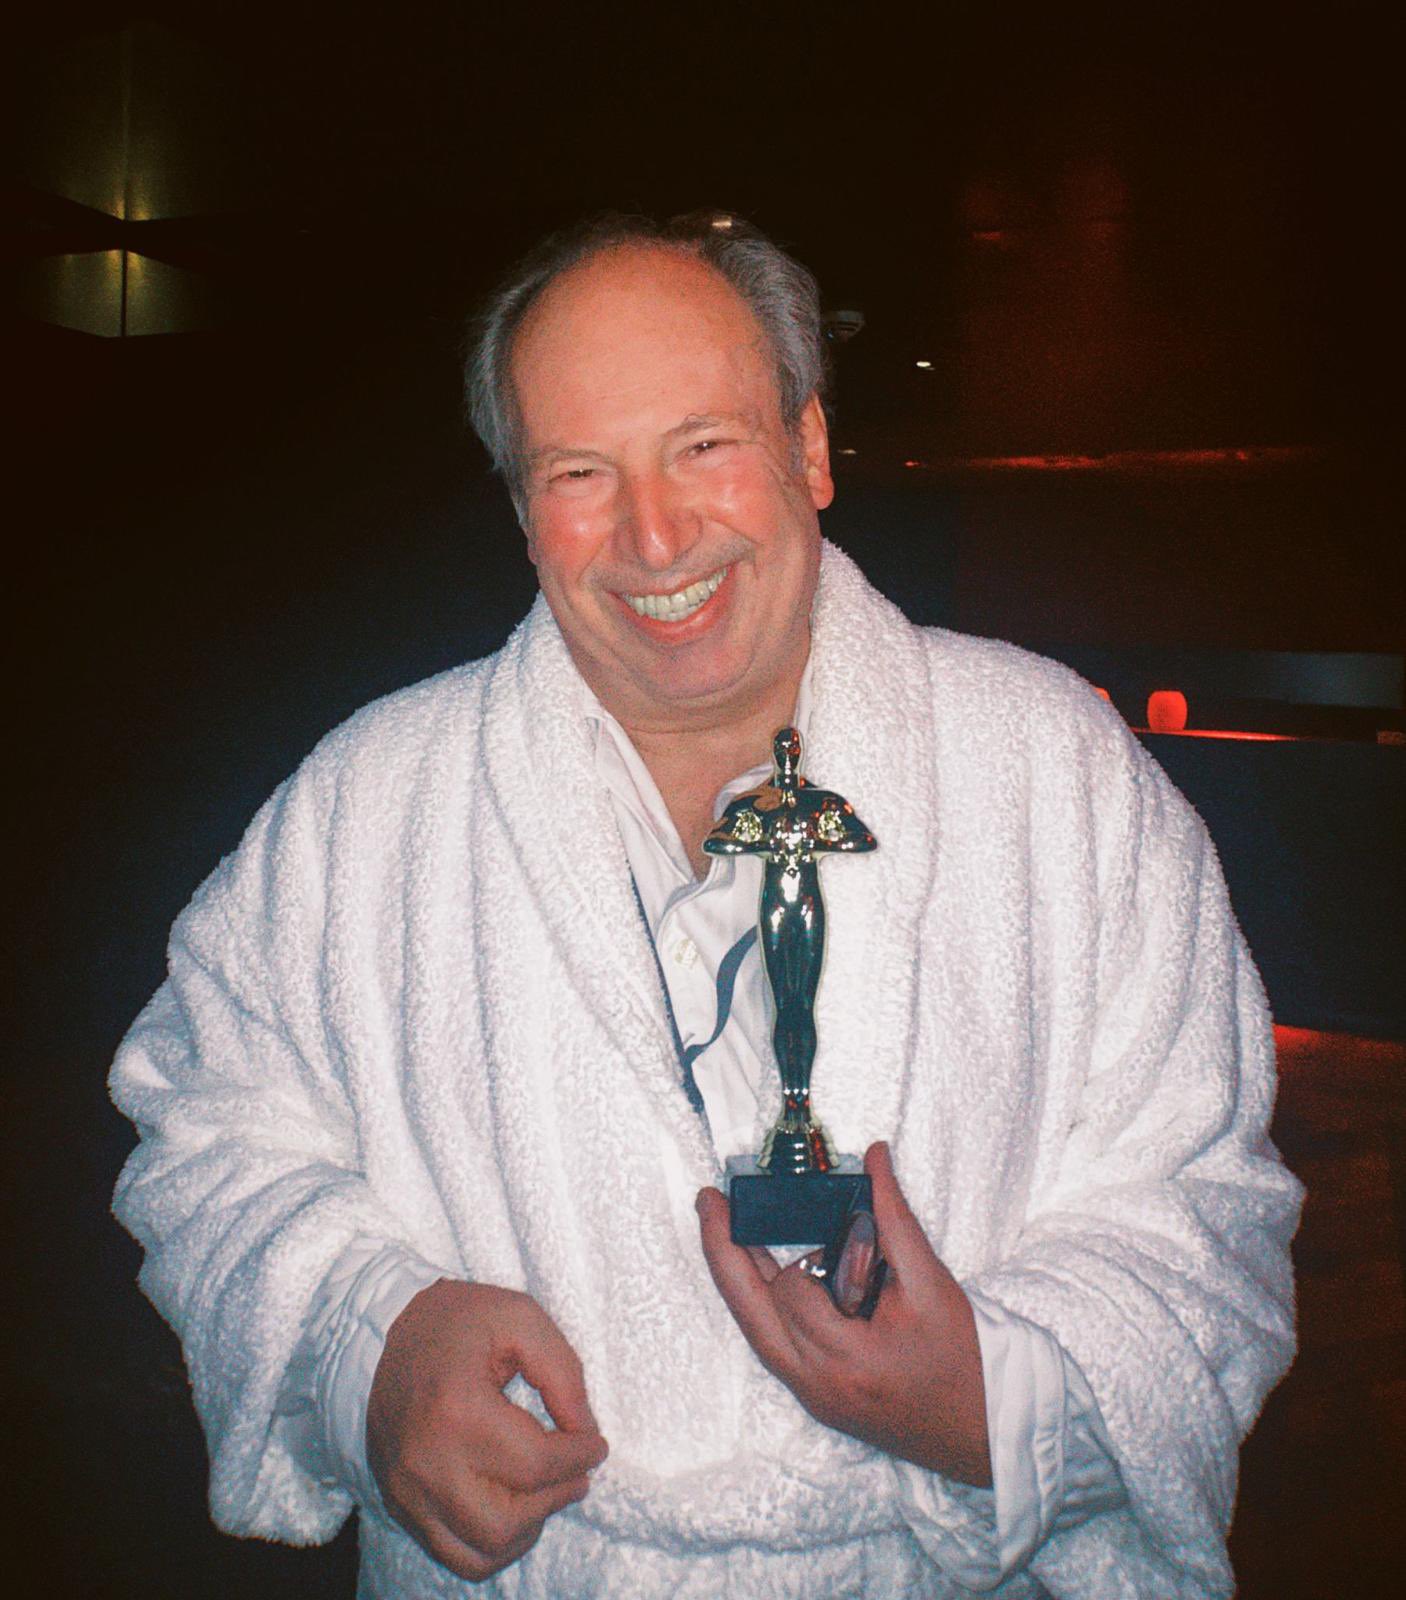 Composer receives his Oscar in a bathrobe